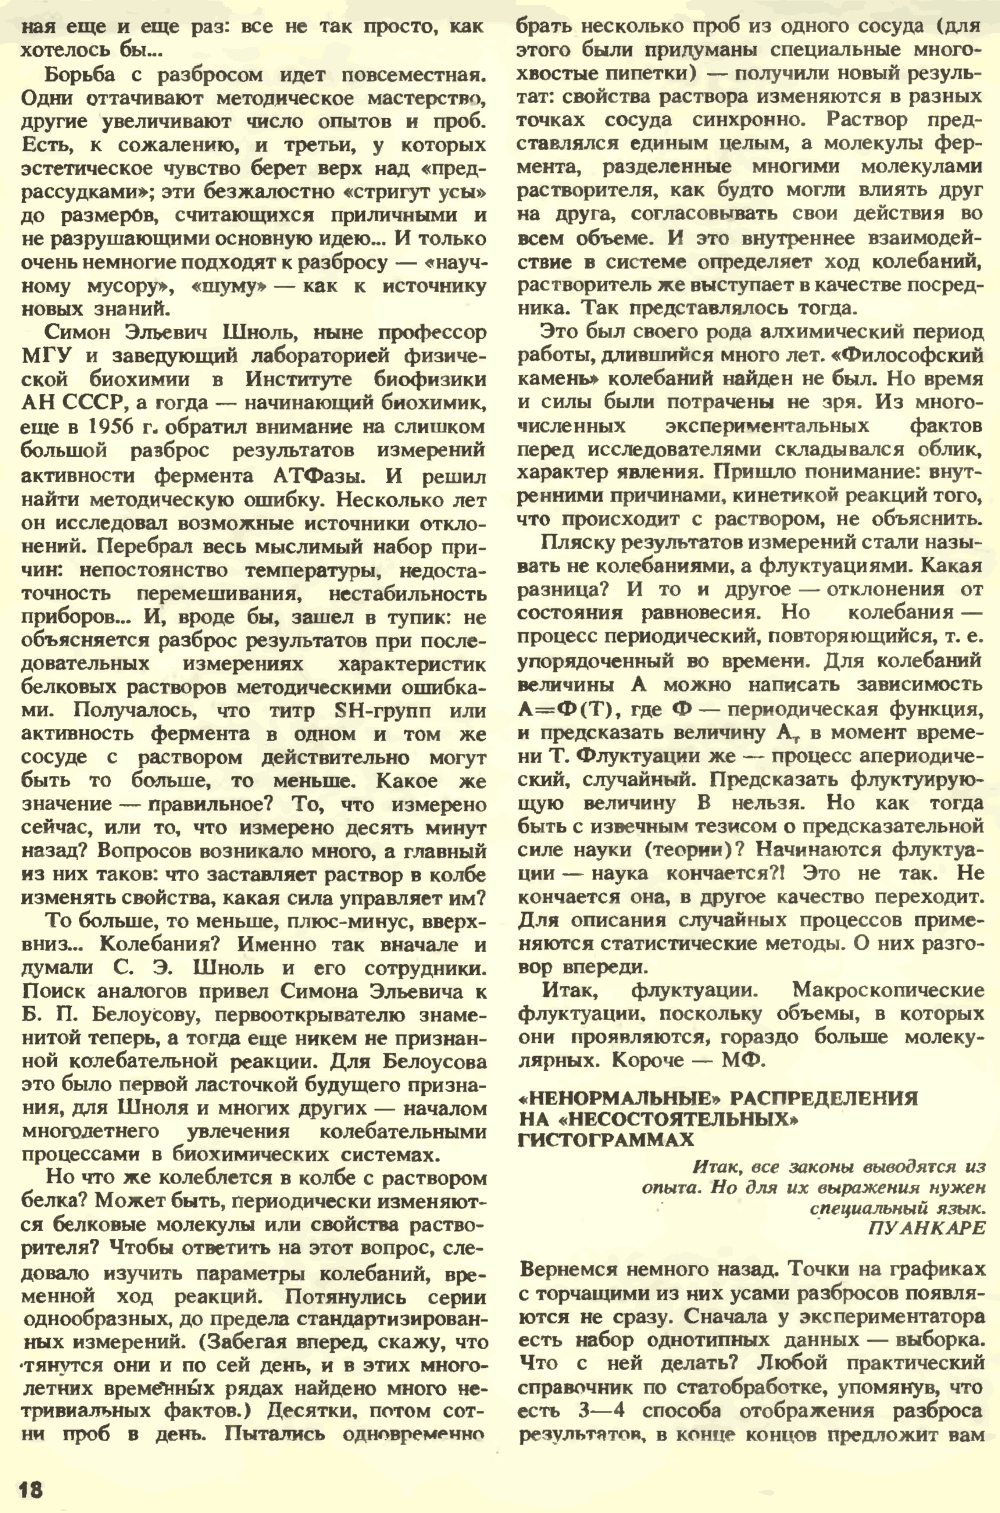 Внешняя сила. С.Н. Катасонов. Химия и жизнь, 1990, №7, с.16-22. Фотокопия №3